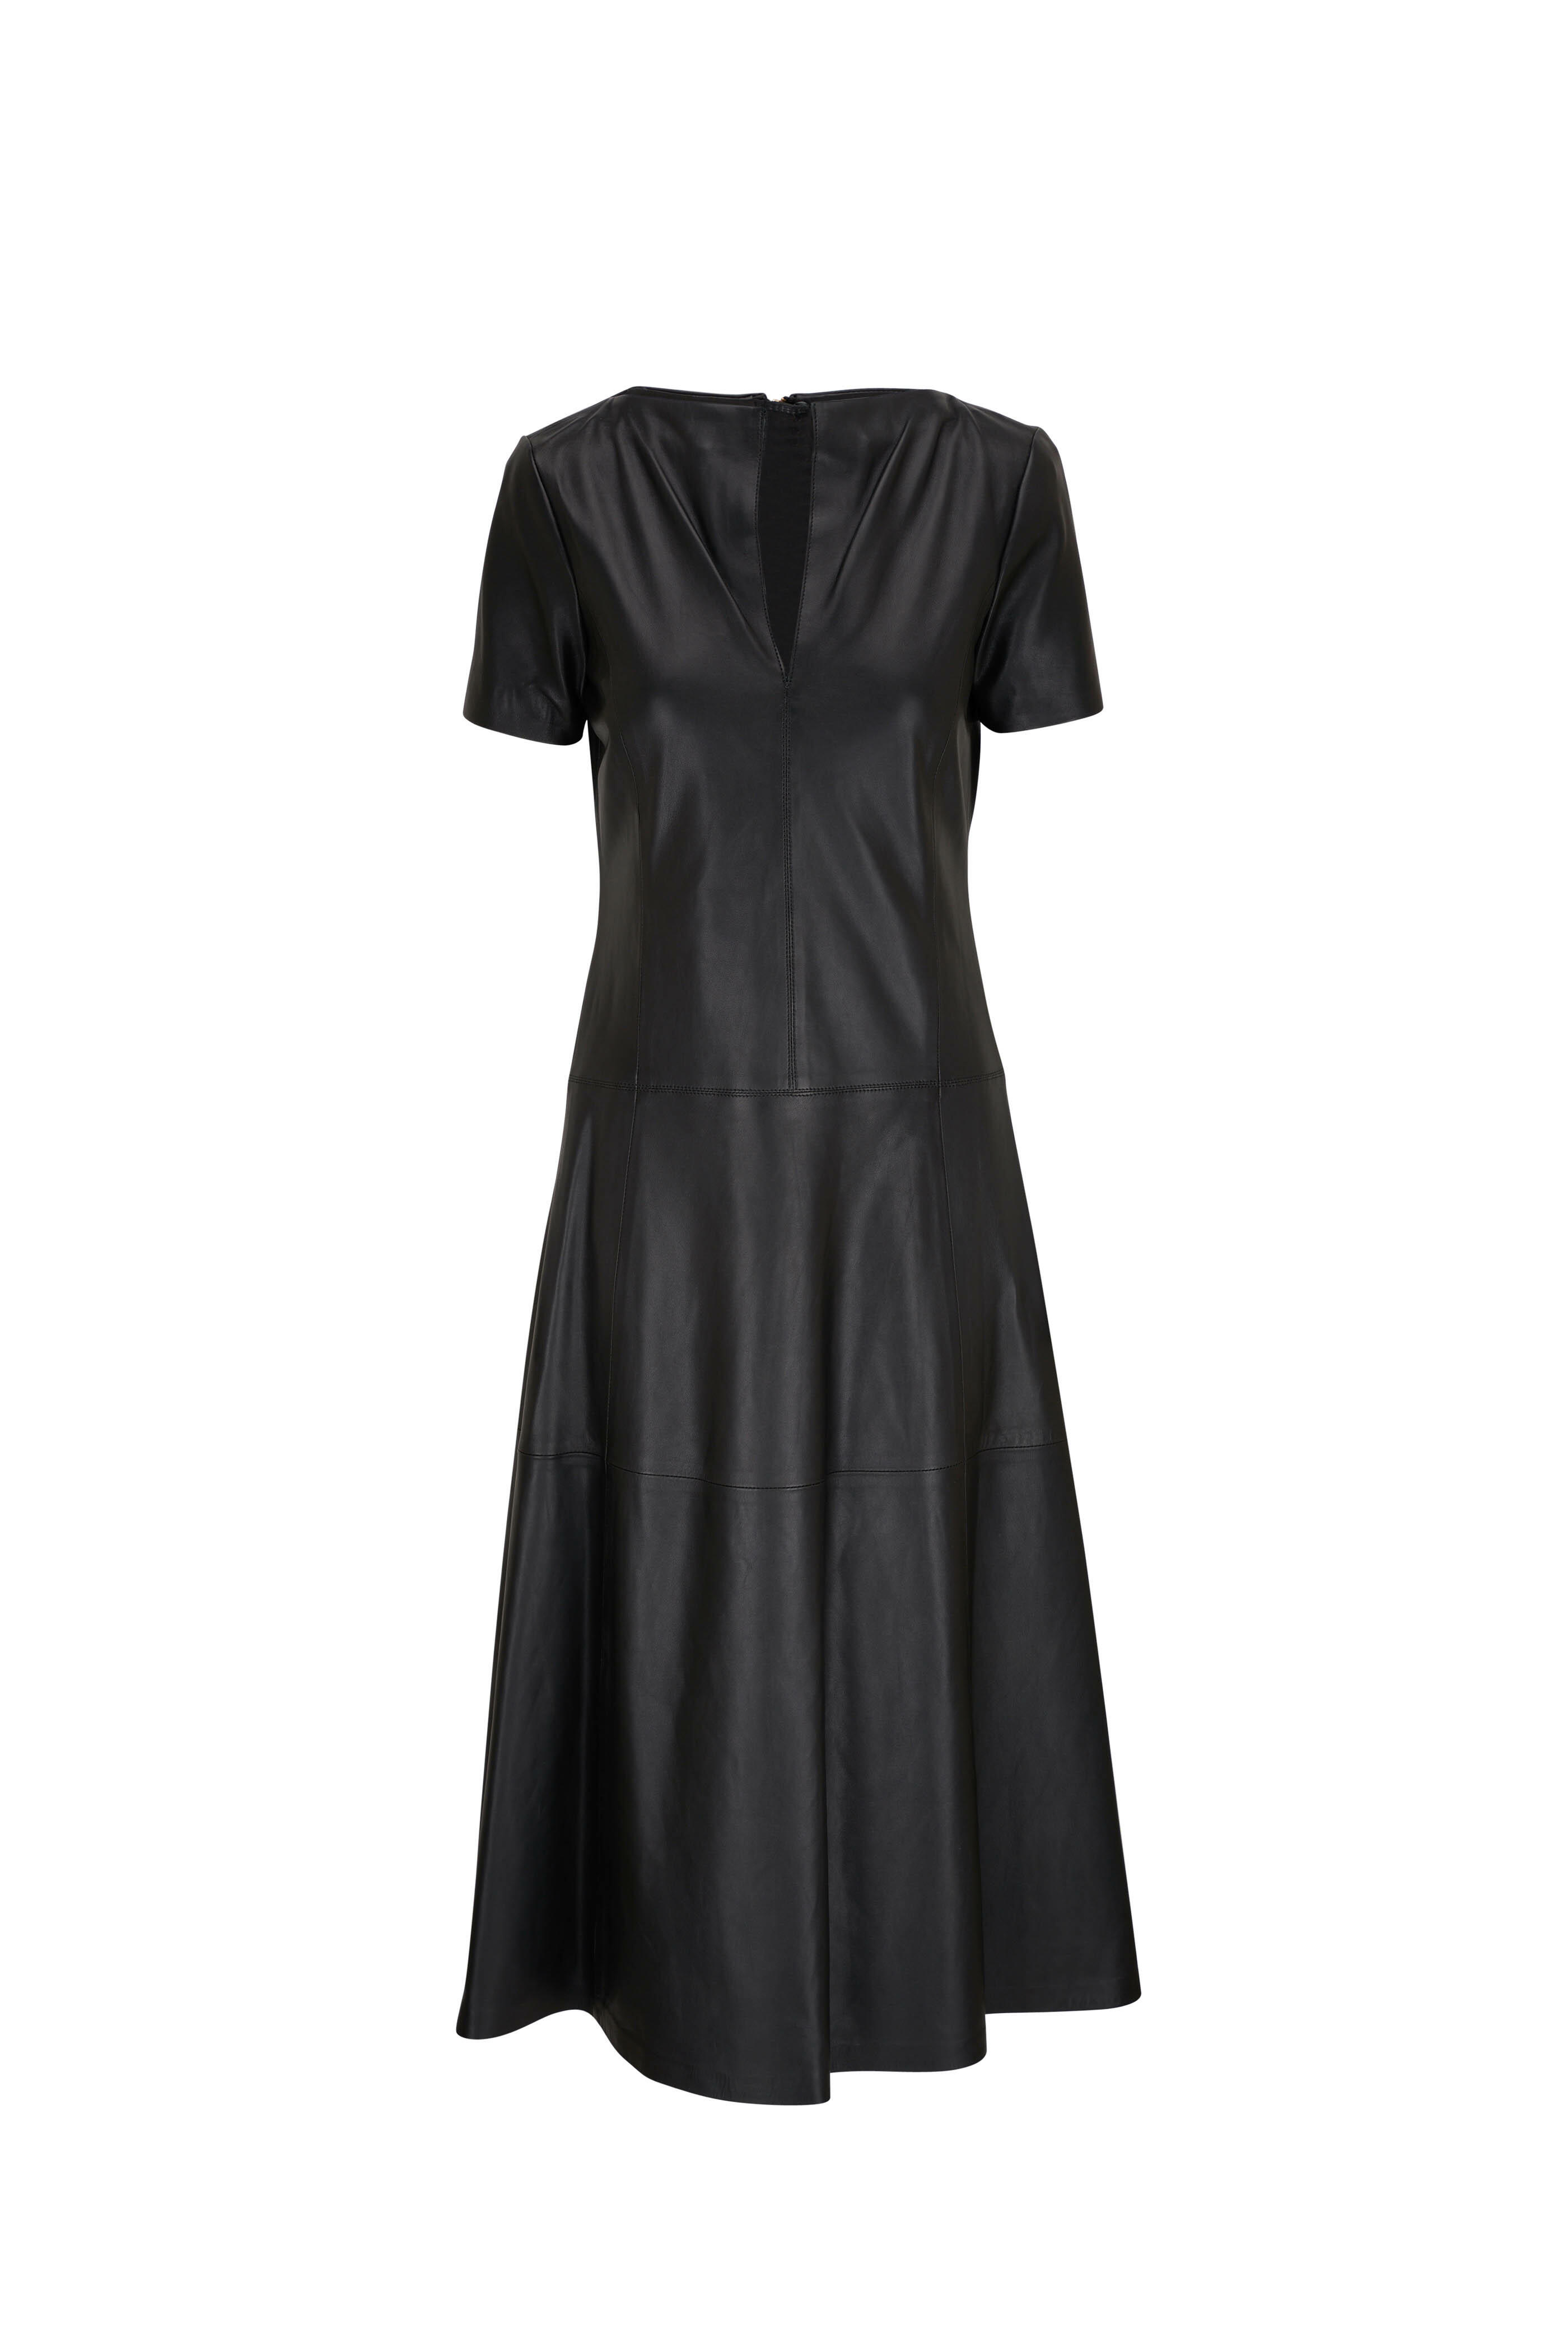 Dorothee Schumacher - Sleek Statement Black Leather Dress